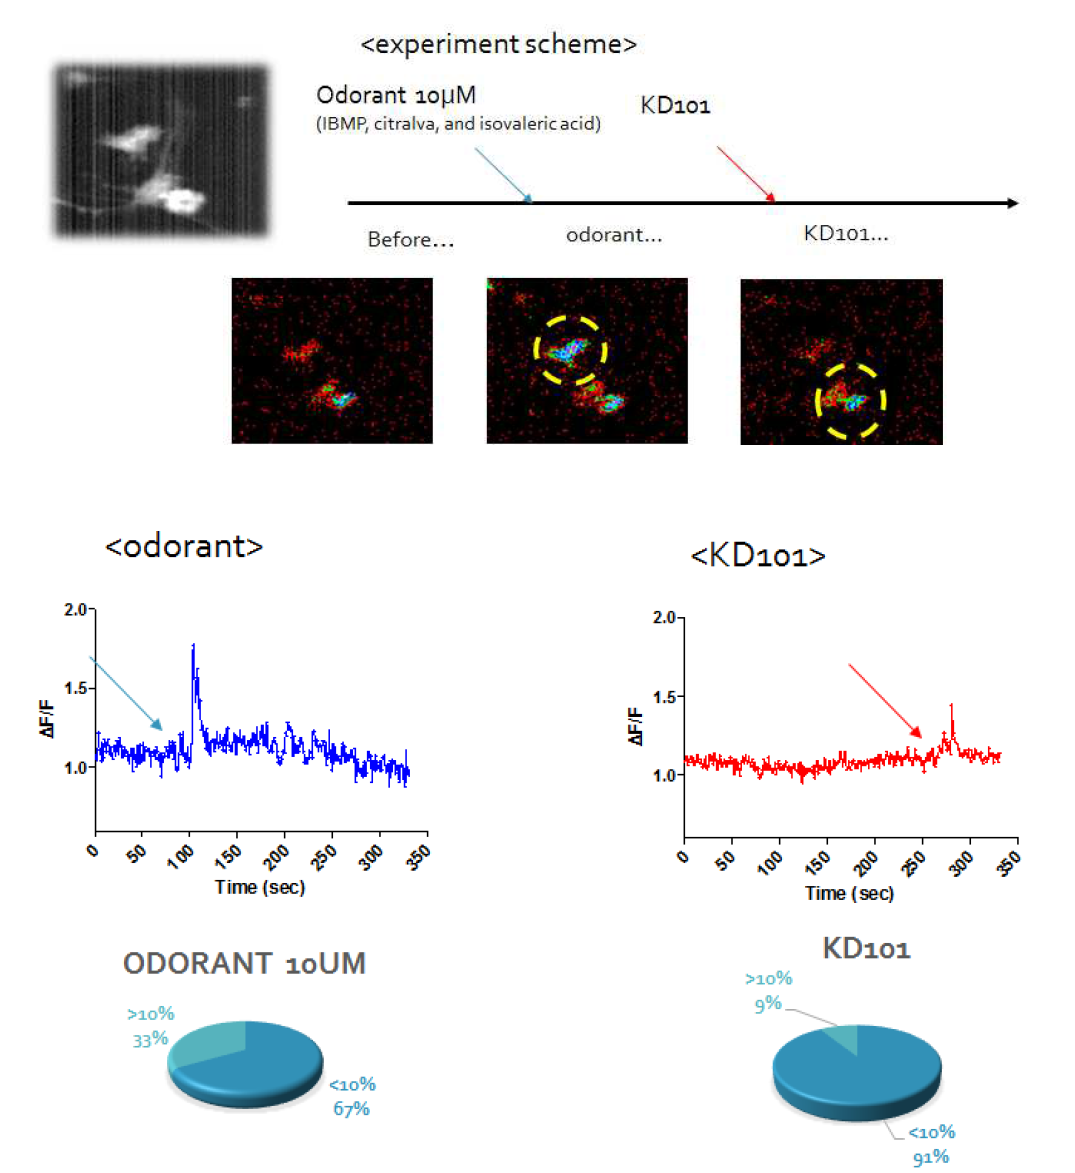 후각 신경세포에 odorant 혼합물과 KD101 처리에 따른 칼슘 신호 측정